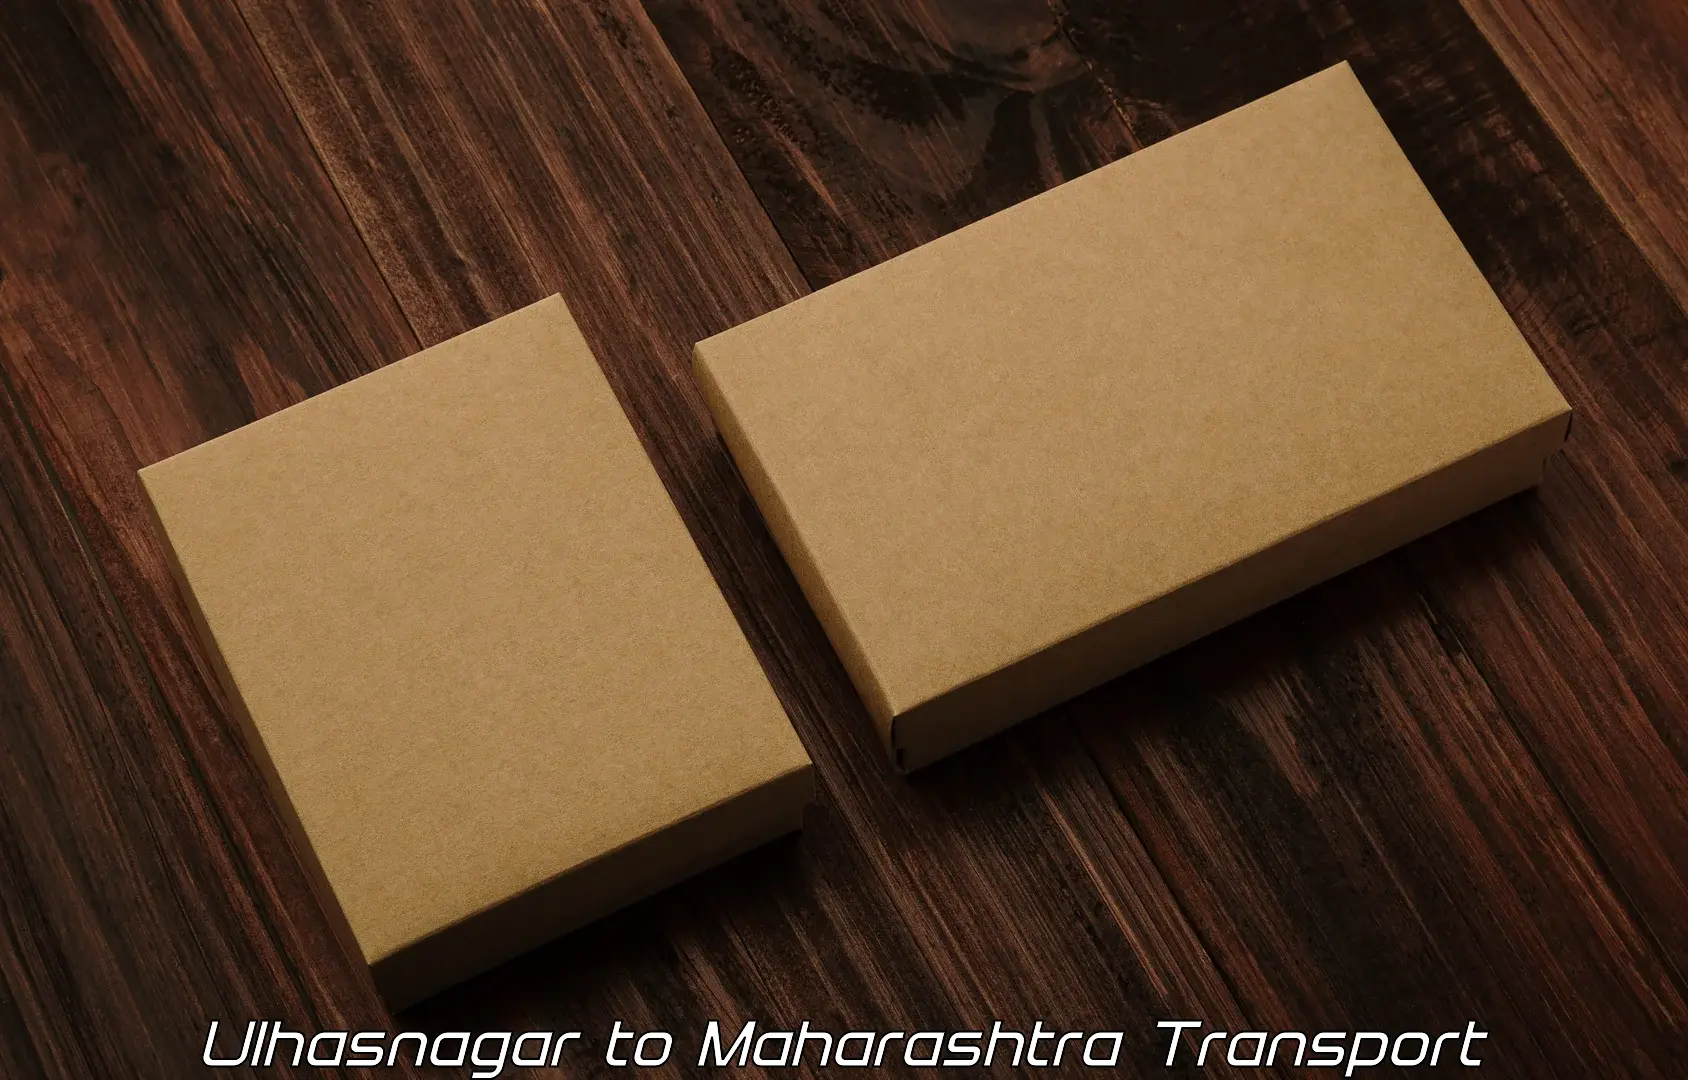 Vehicle parcel service Ulhasnagar to Mumbai